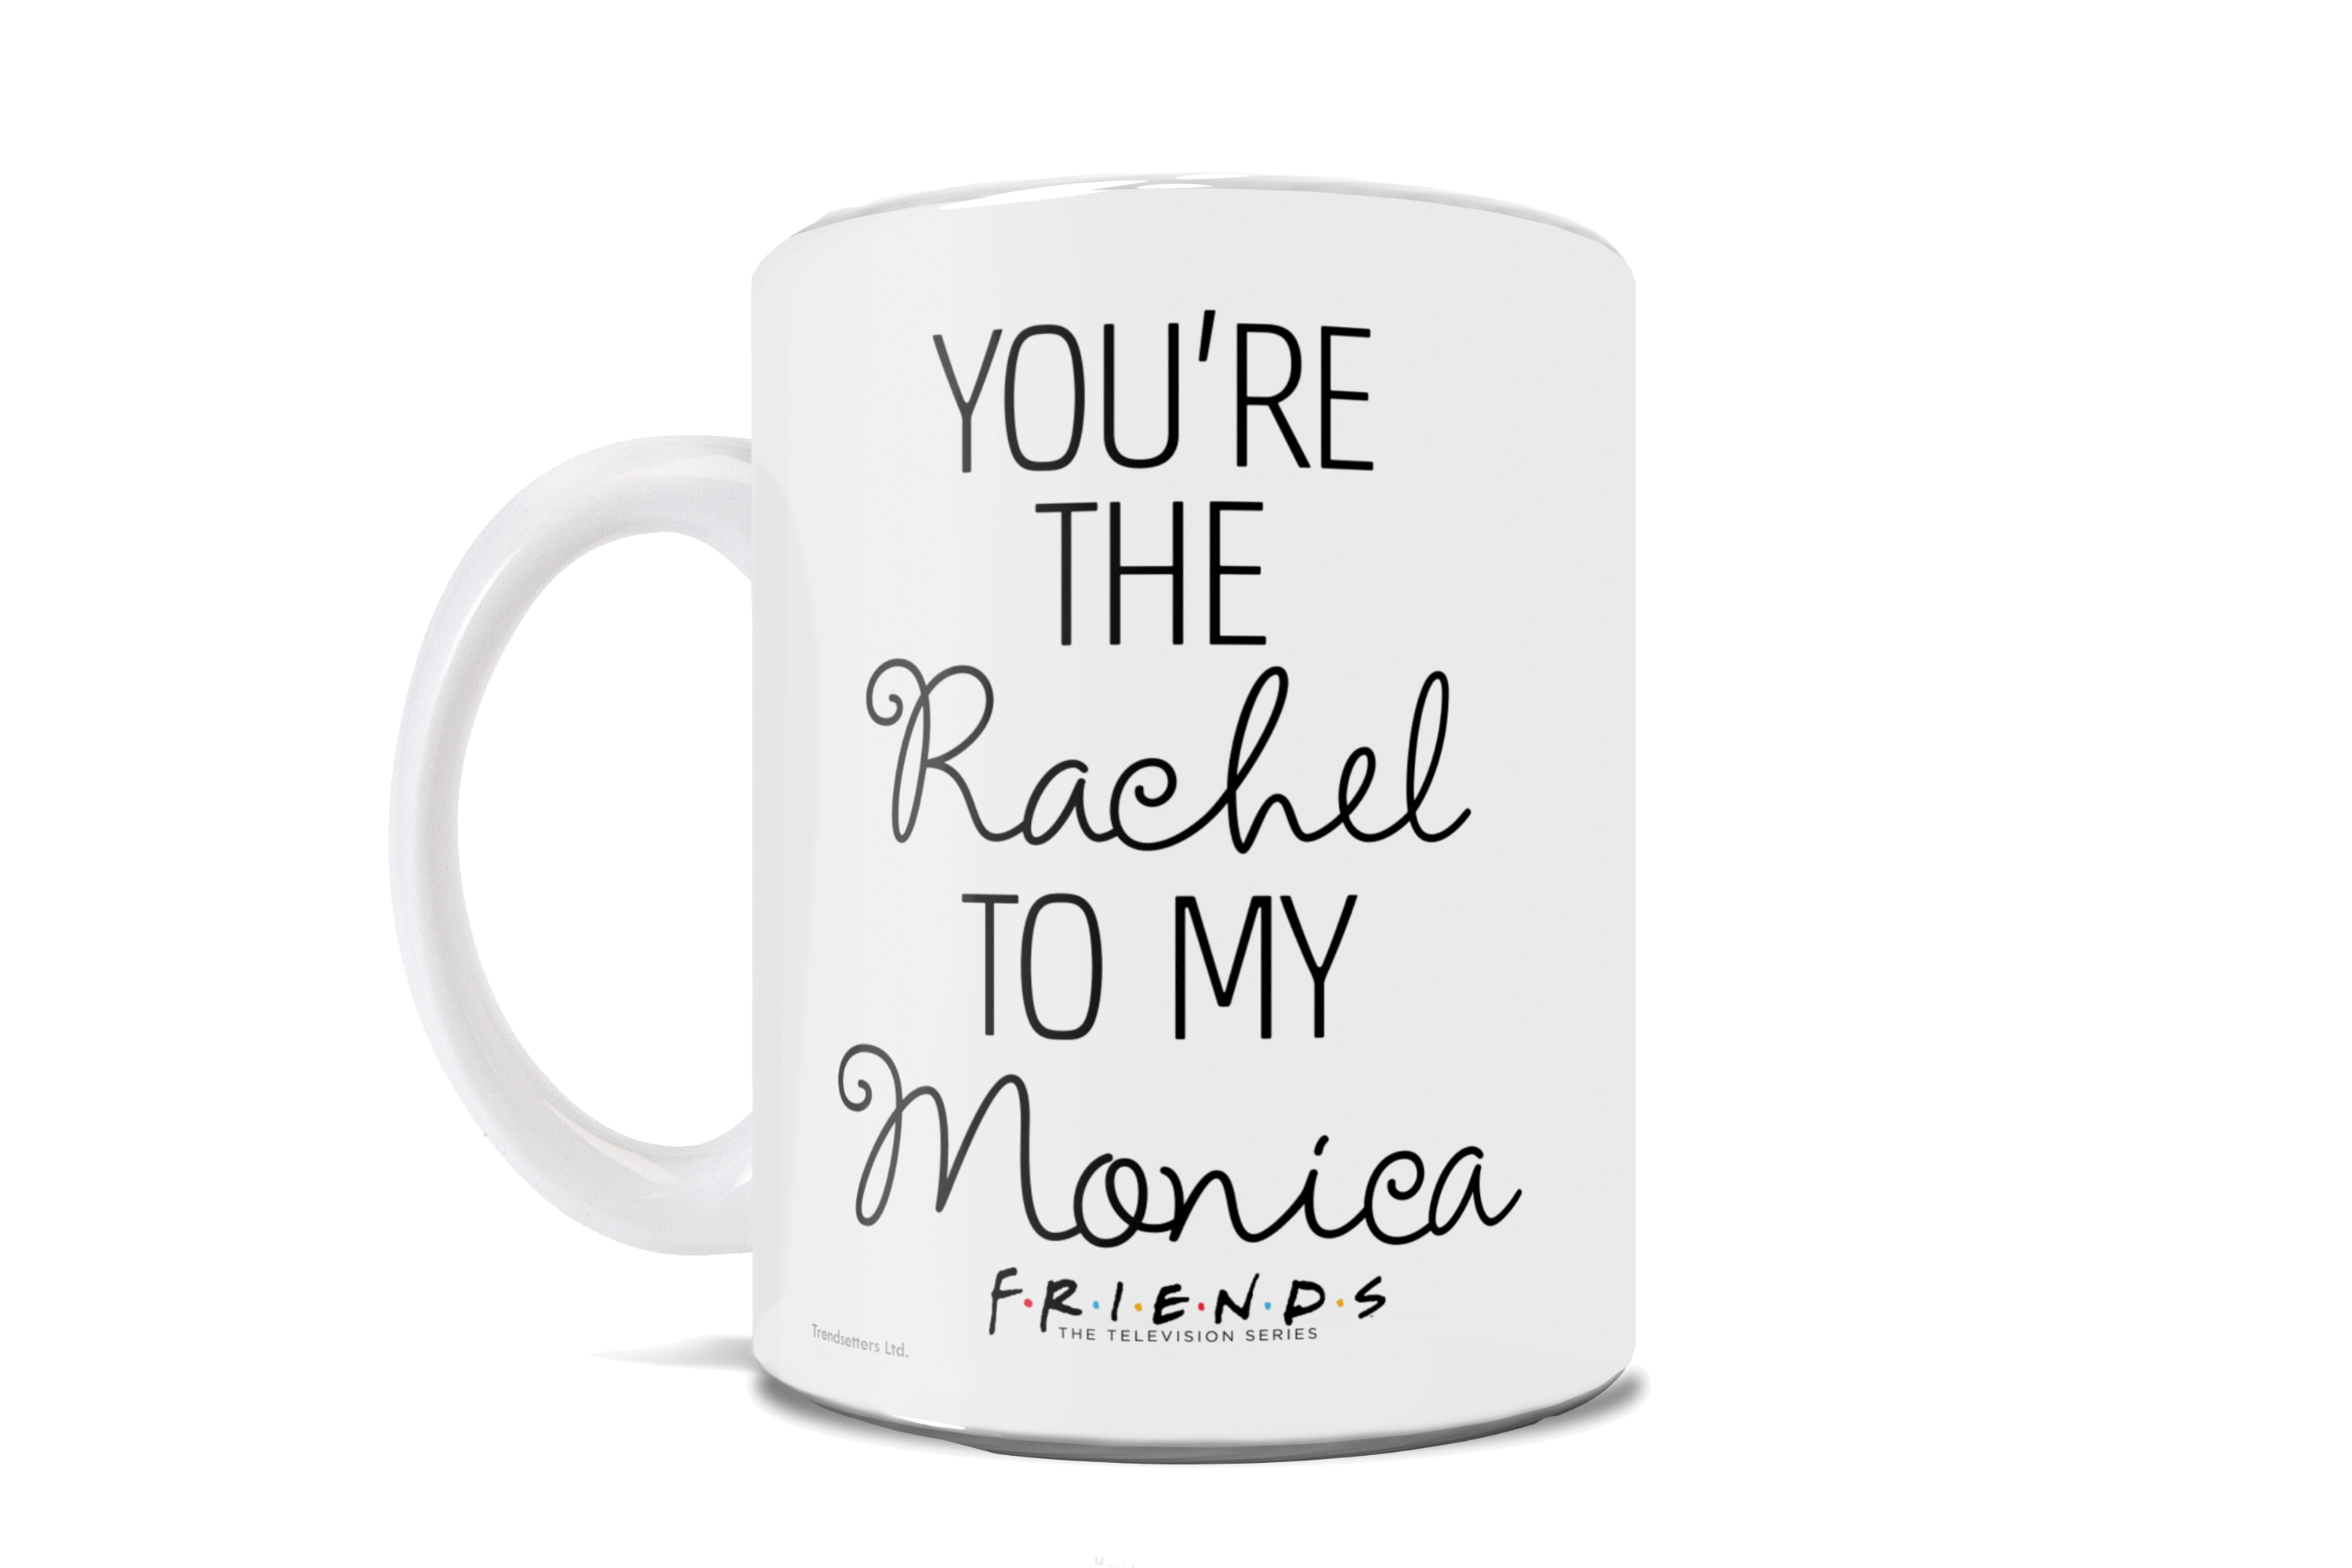 Friends: The Television Show (Youre the Rachel to my Monica) 11 oz Ceramic Mug WMUG1058